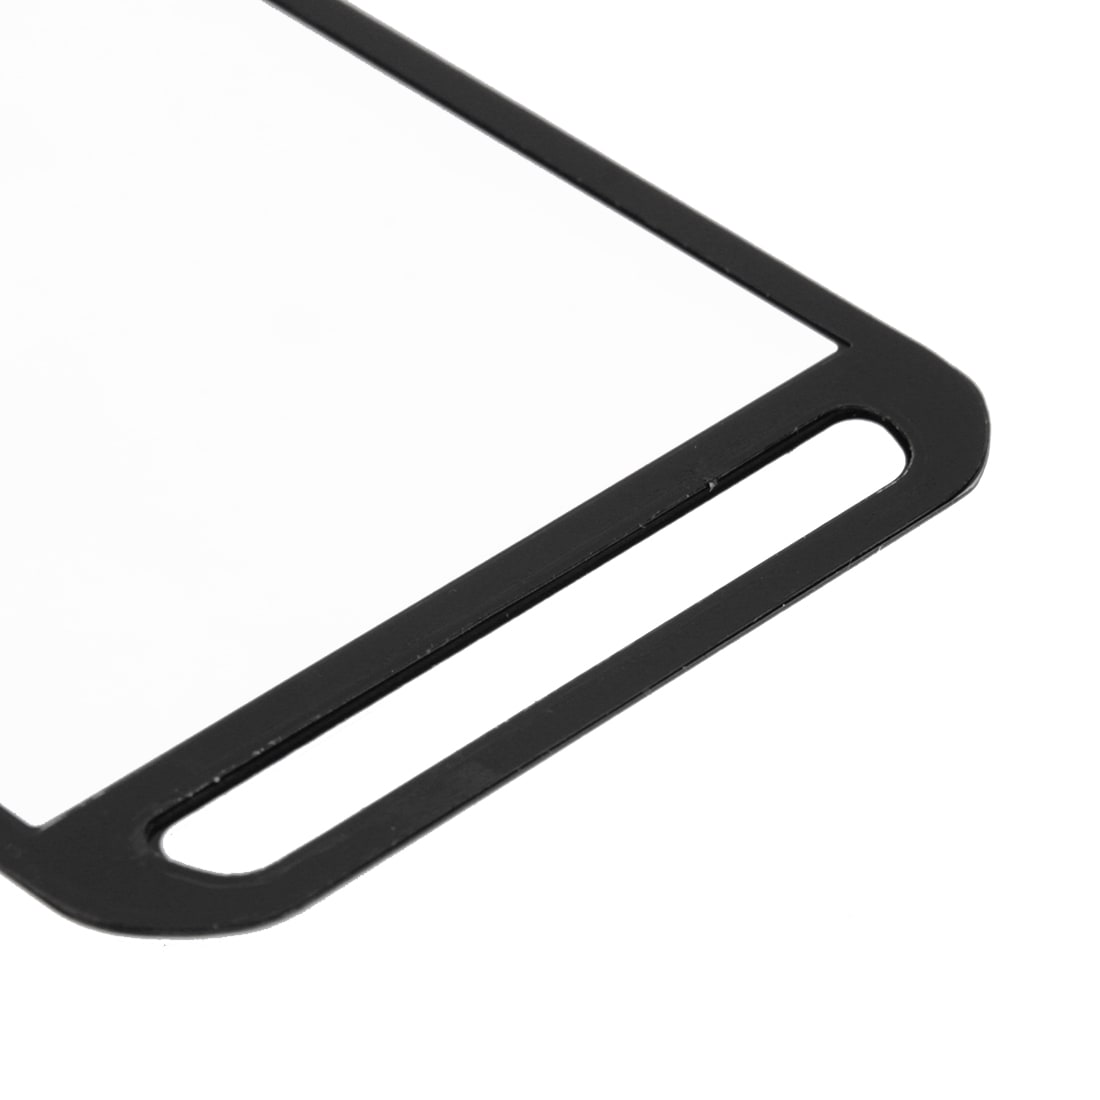 Touch + Displayglas voor Samsung Galaxy Xcover 3 / G388 - Zwart